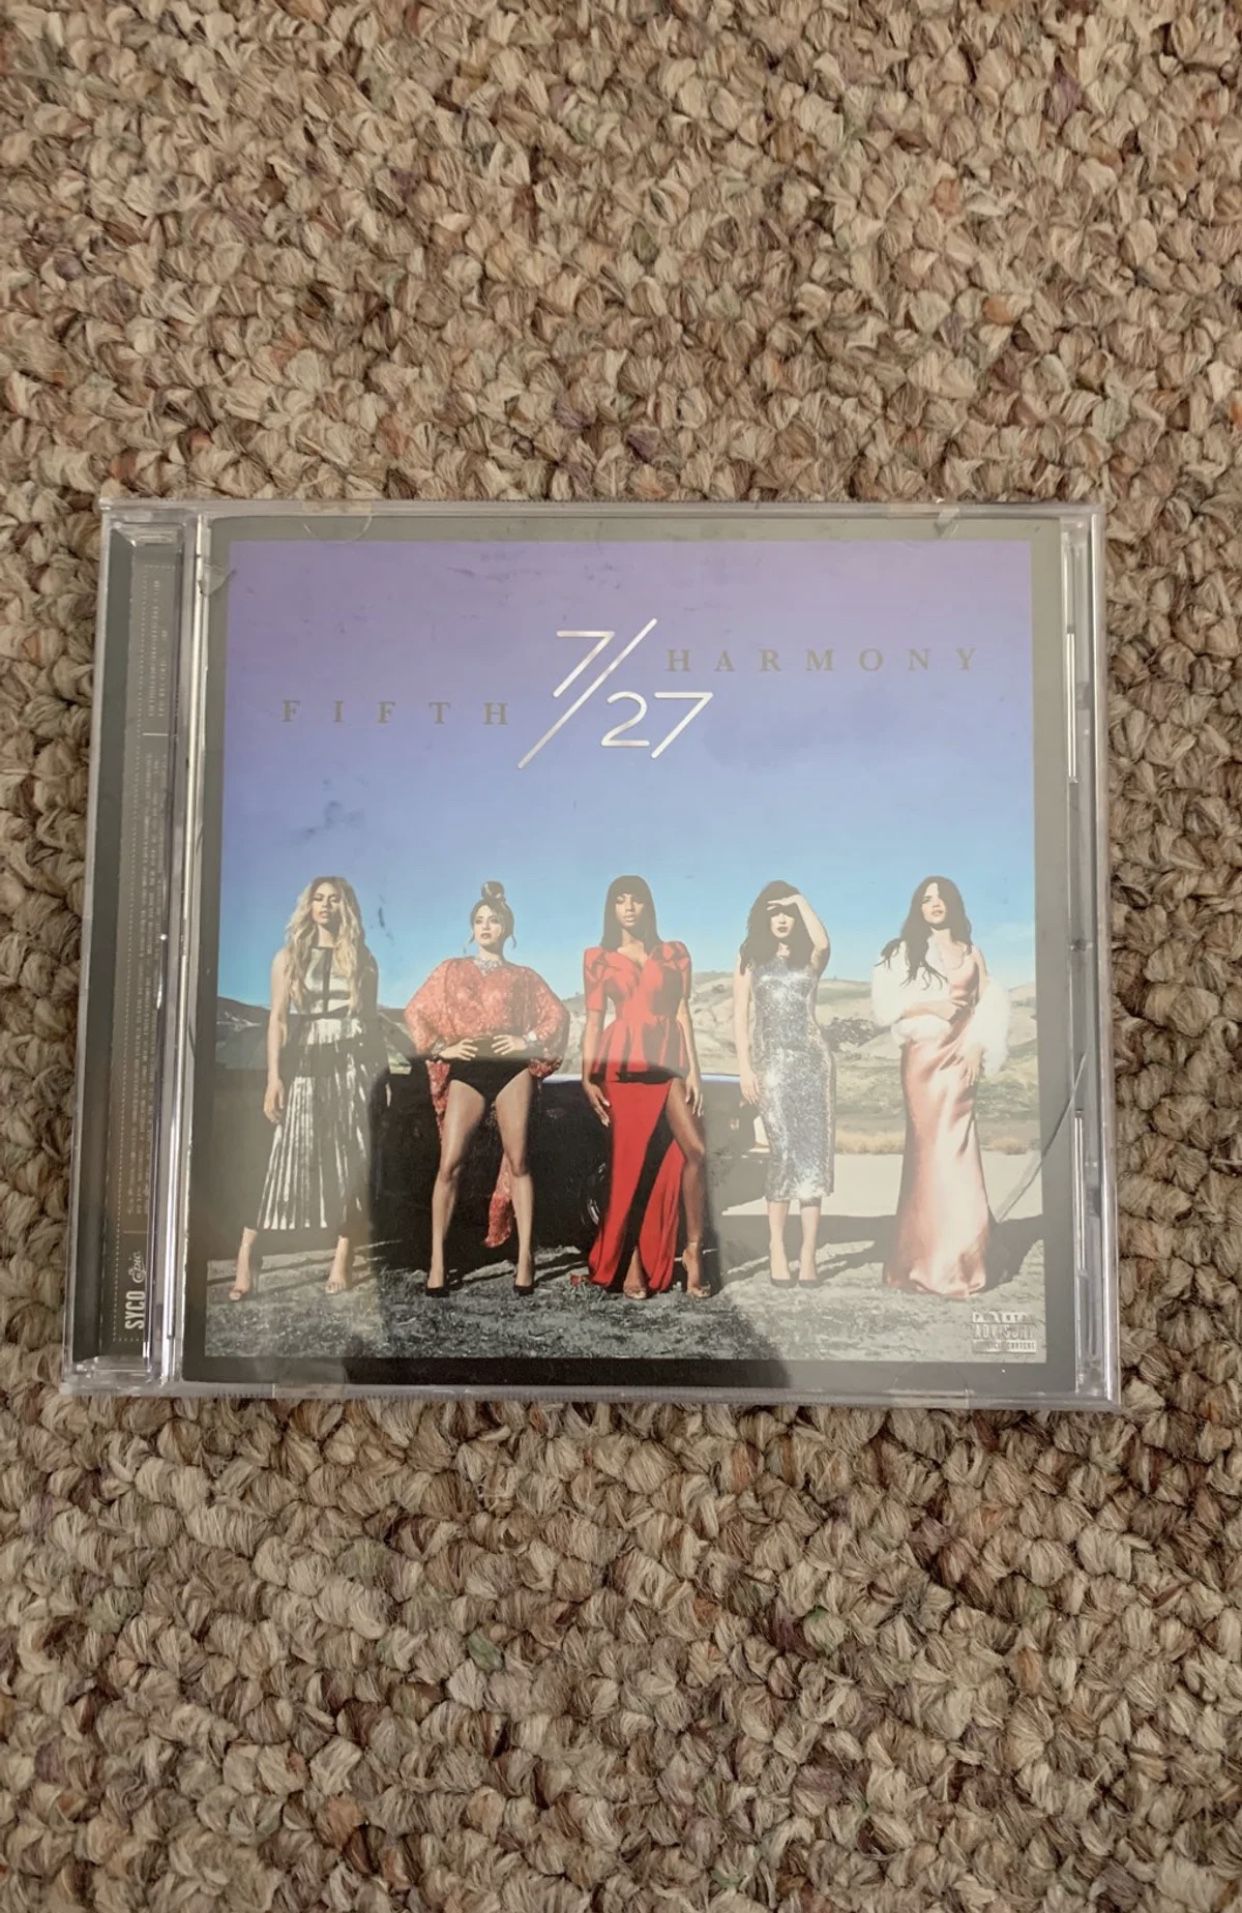 Fifth Harmony 7/27 CD